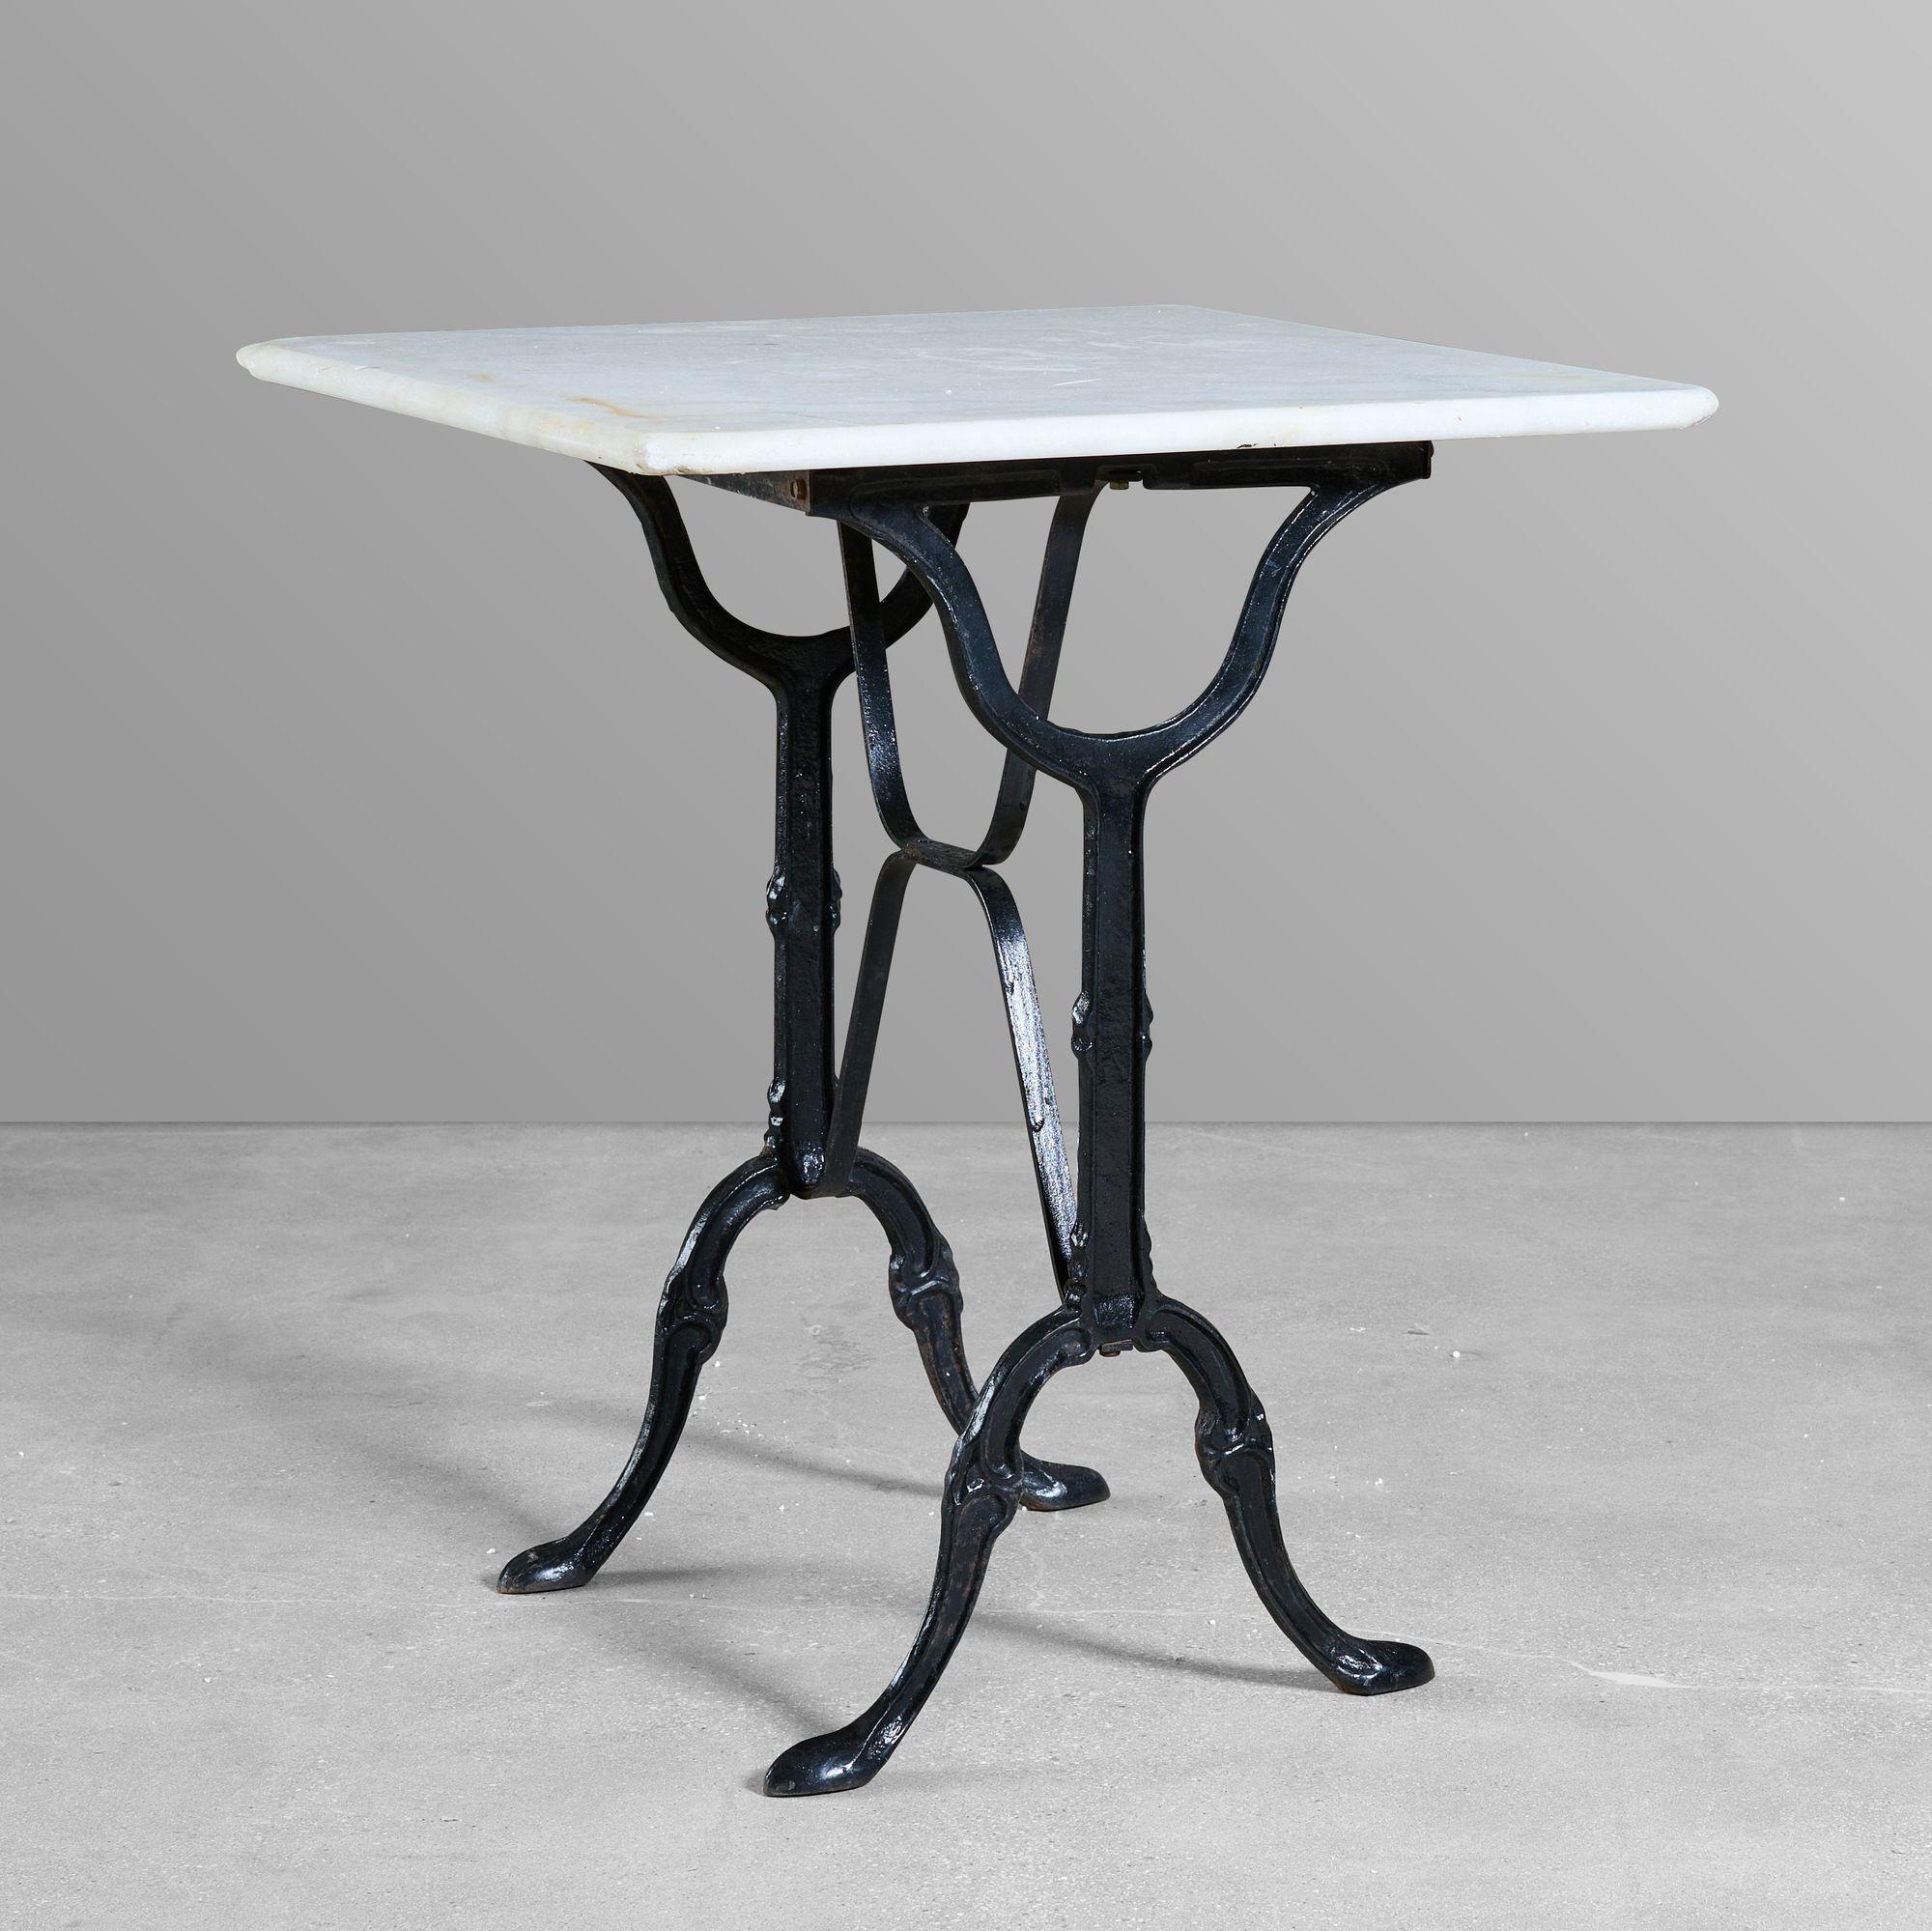 Cafe-Tisch aus Gusseisen mit einer Marmorplatte.